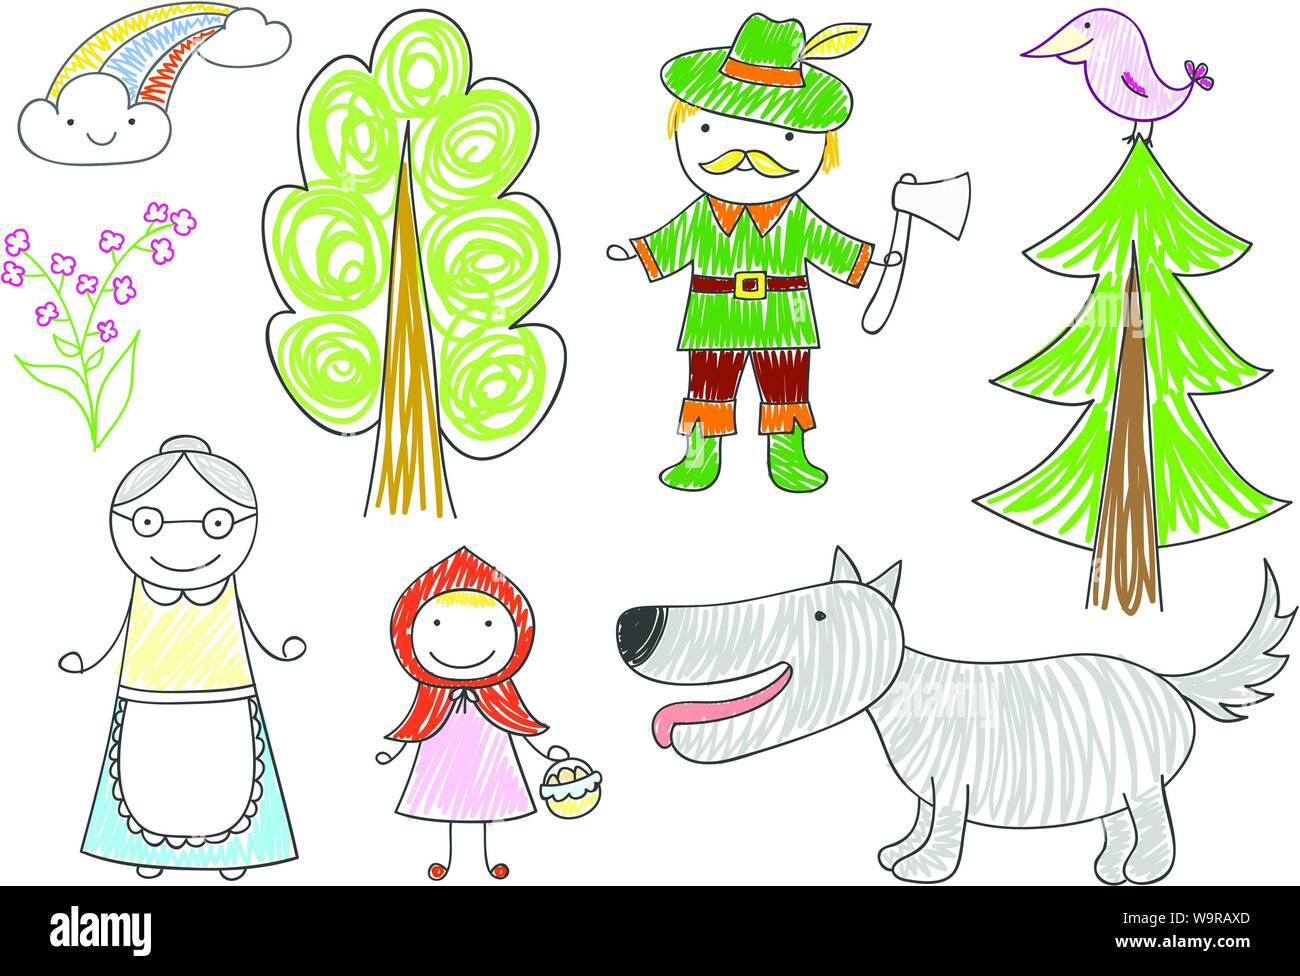 Vektor Skizzen mit Zeichen von 'Rotkäppchen' Märchen - Wolf, Großmutter, Mädchen und Holzfäller. Kid Zeichnung in doodle Stil Stock Vektor